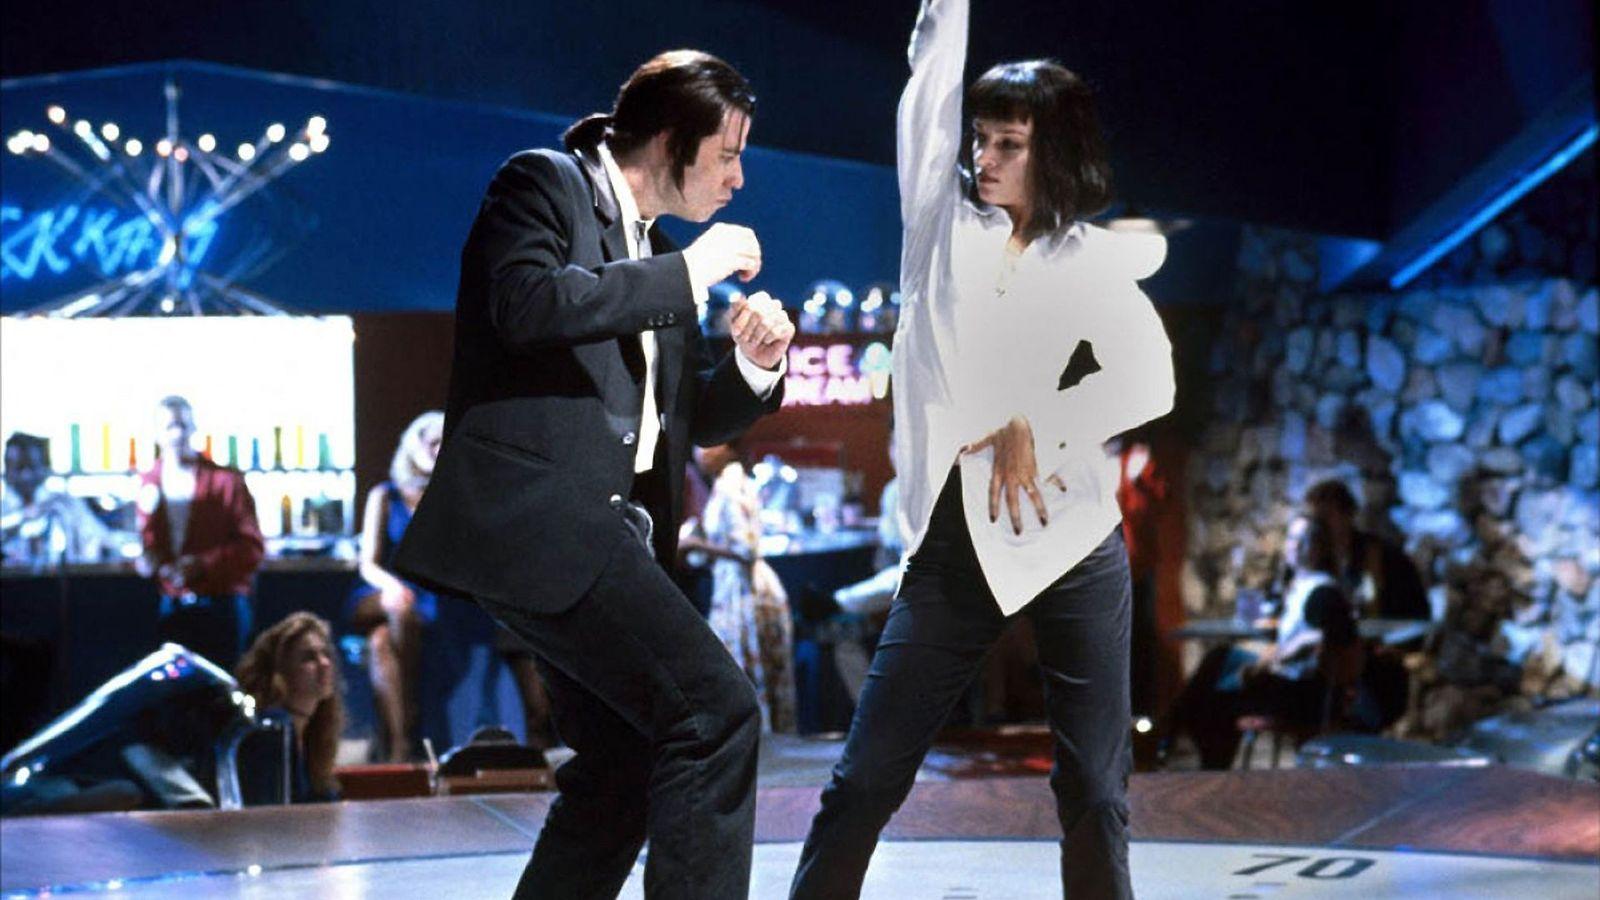 Una escena de Pulp Fiction, con John Travolta y Uma Thurman bailando